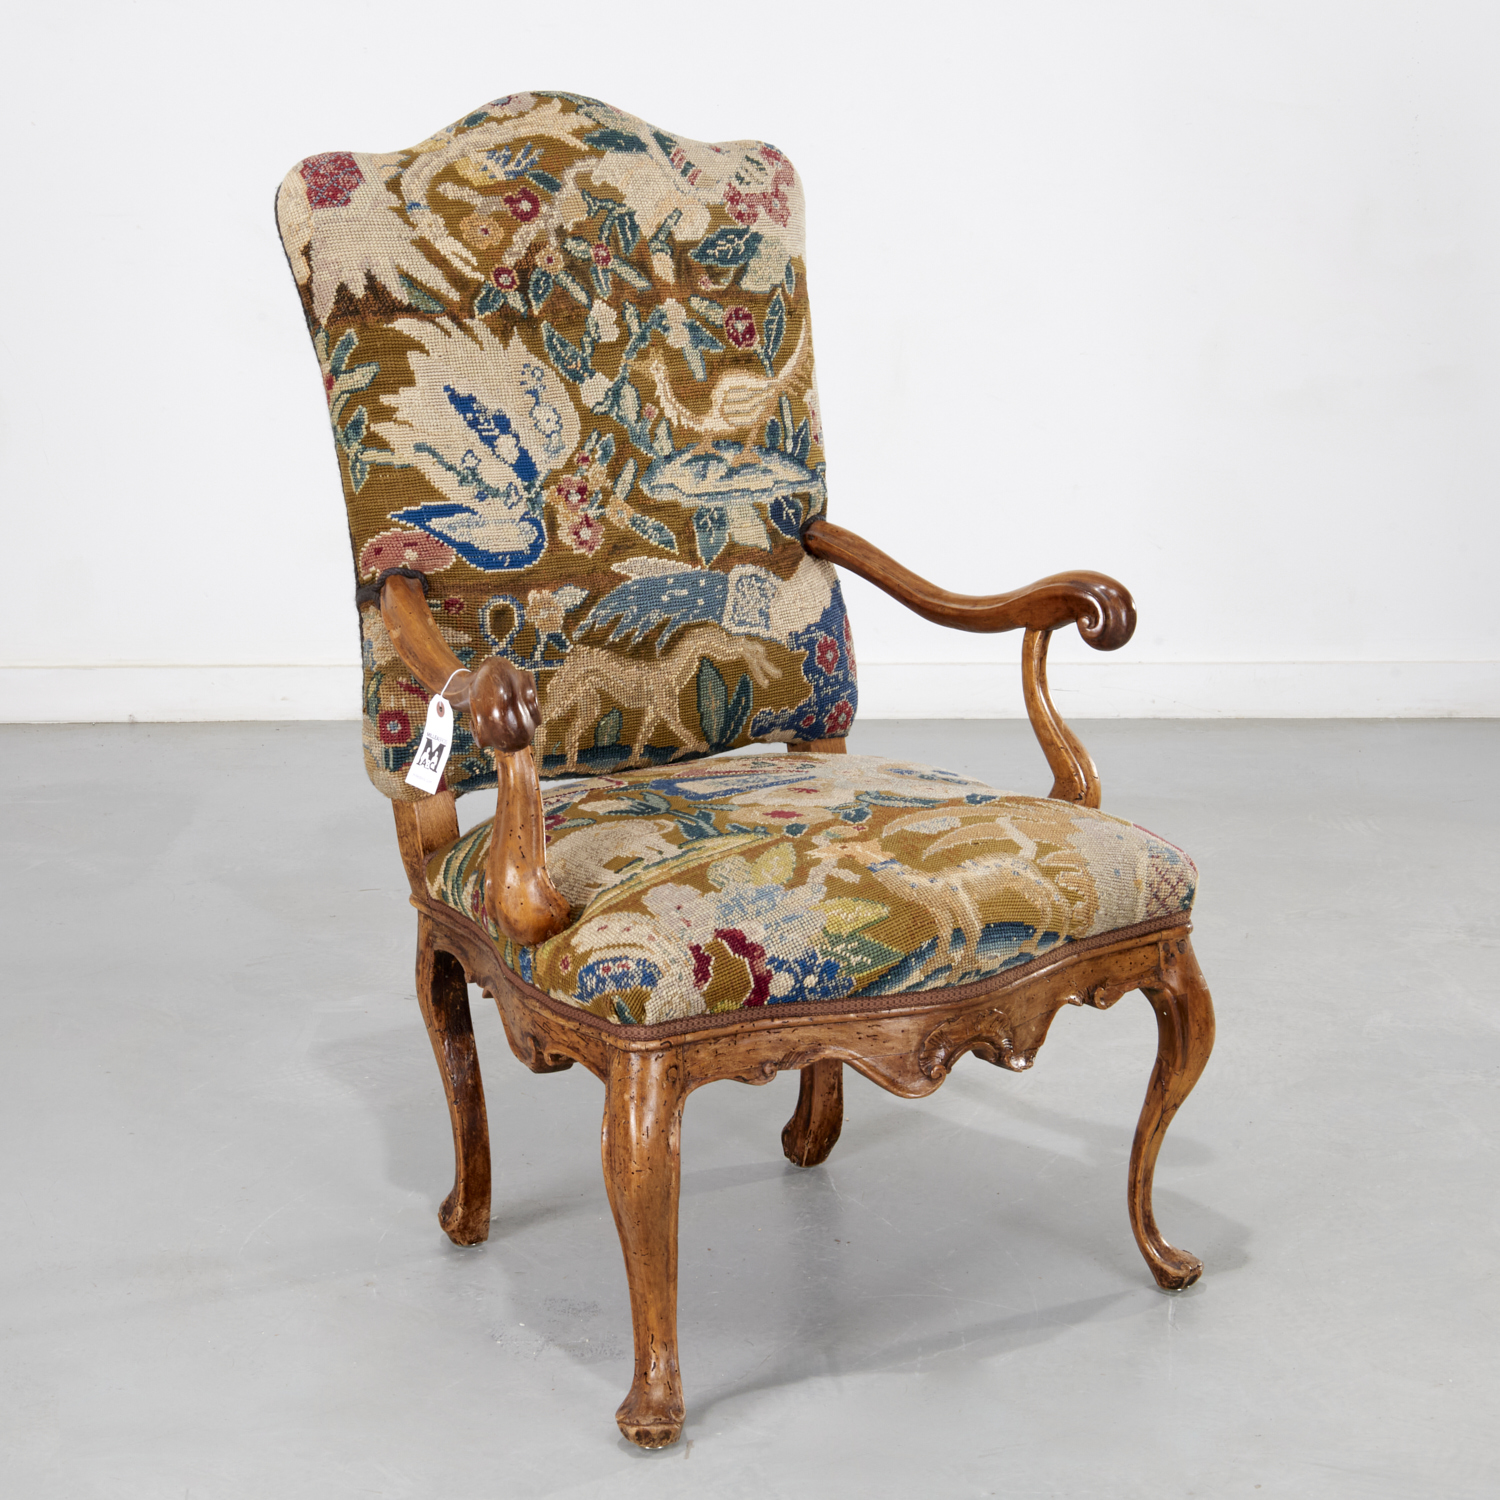 Antique Italian Rococo style needlework armchair